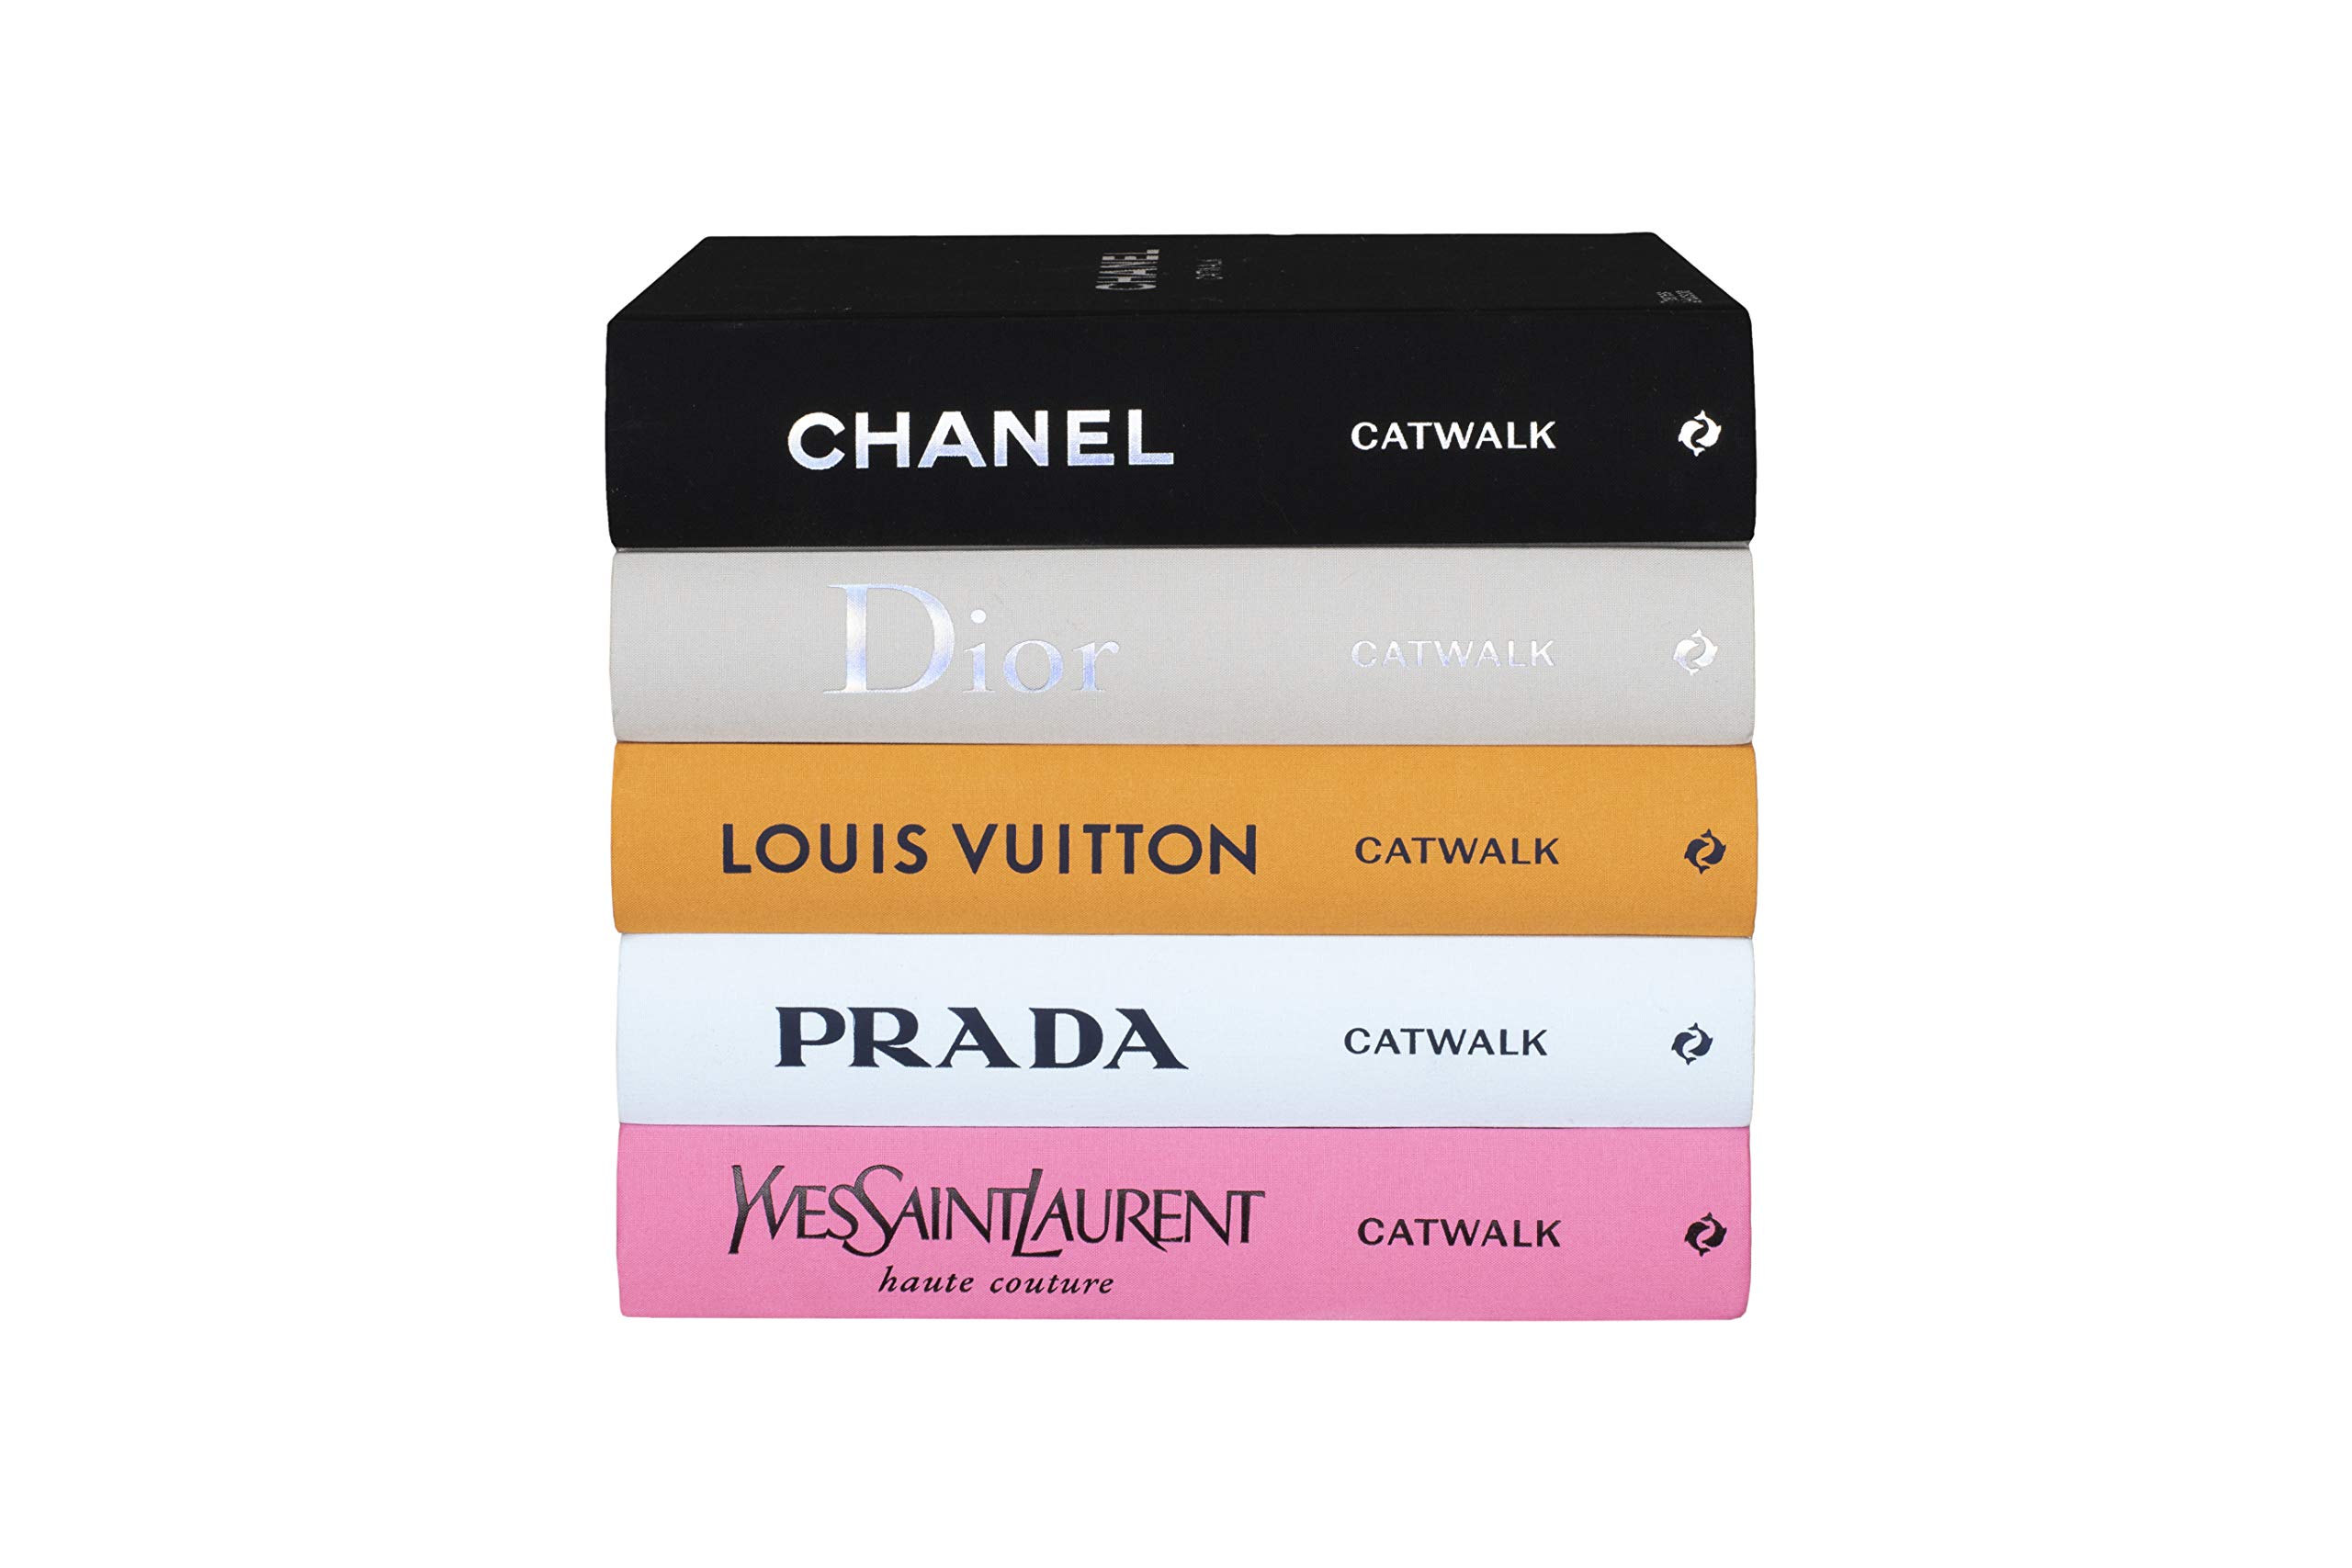 NEW Book Louis Vuitton Catwalk 9780500519943